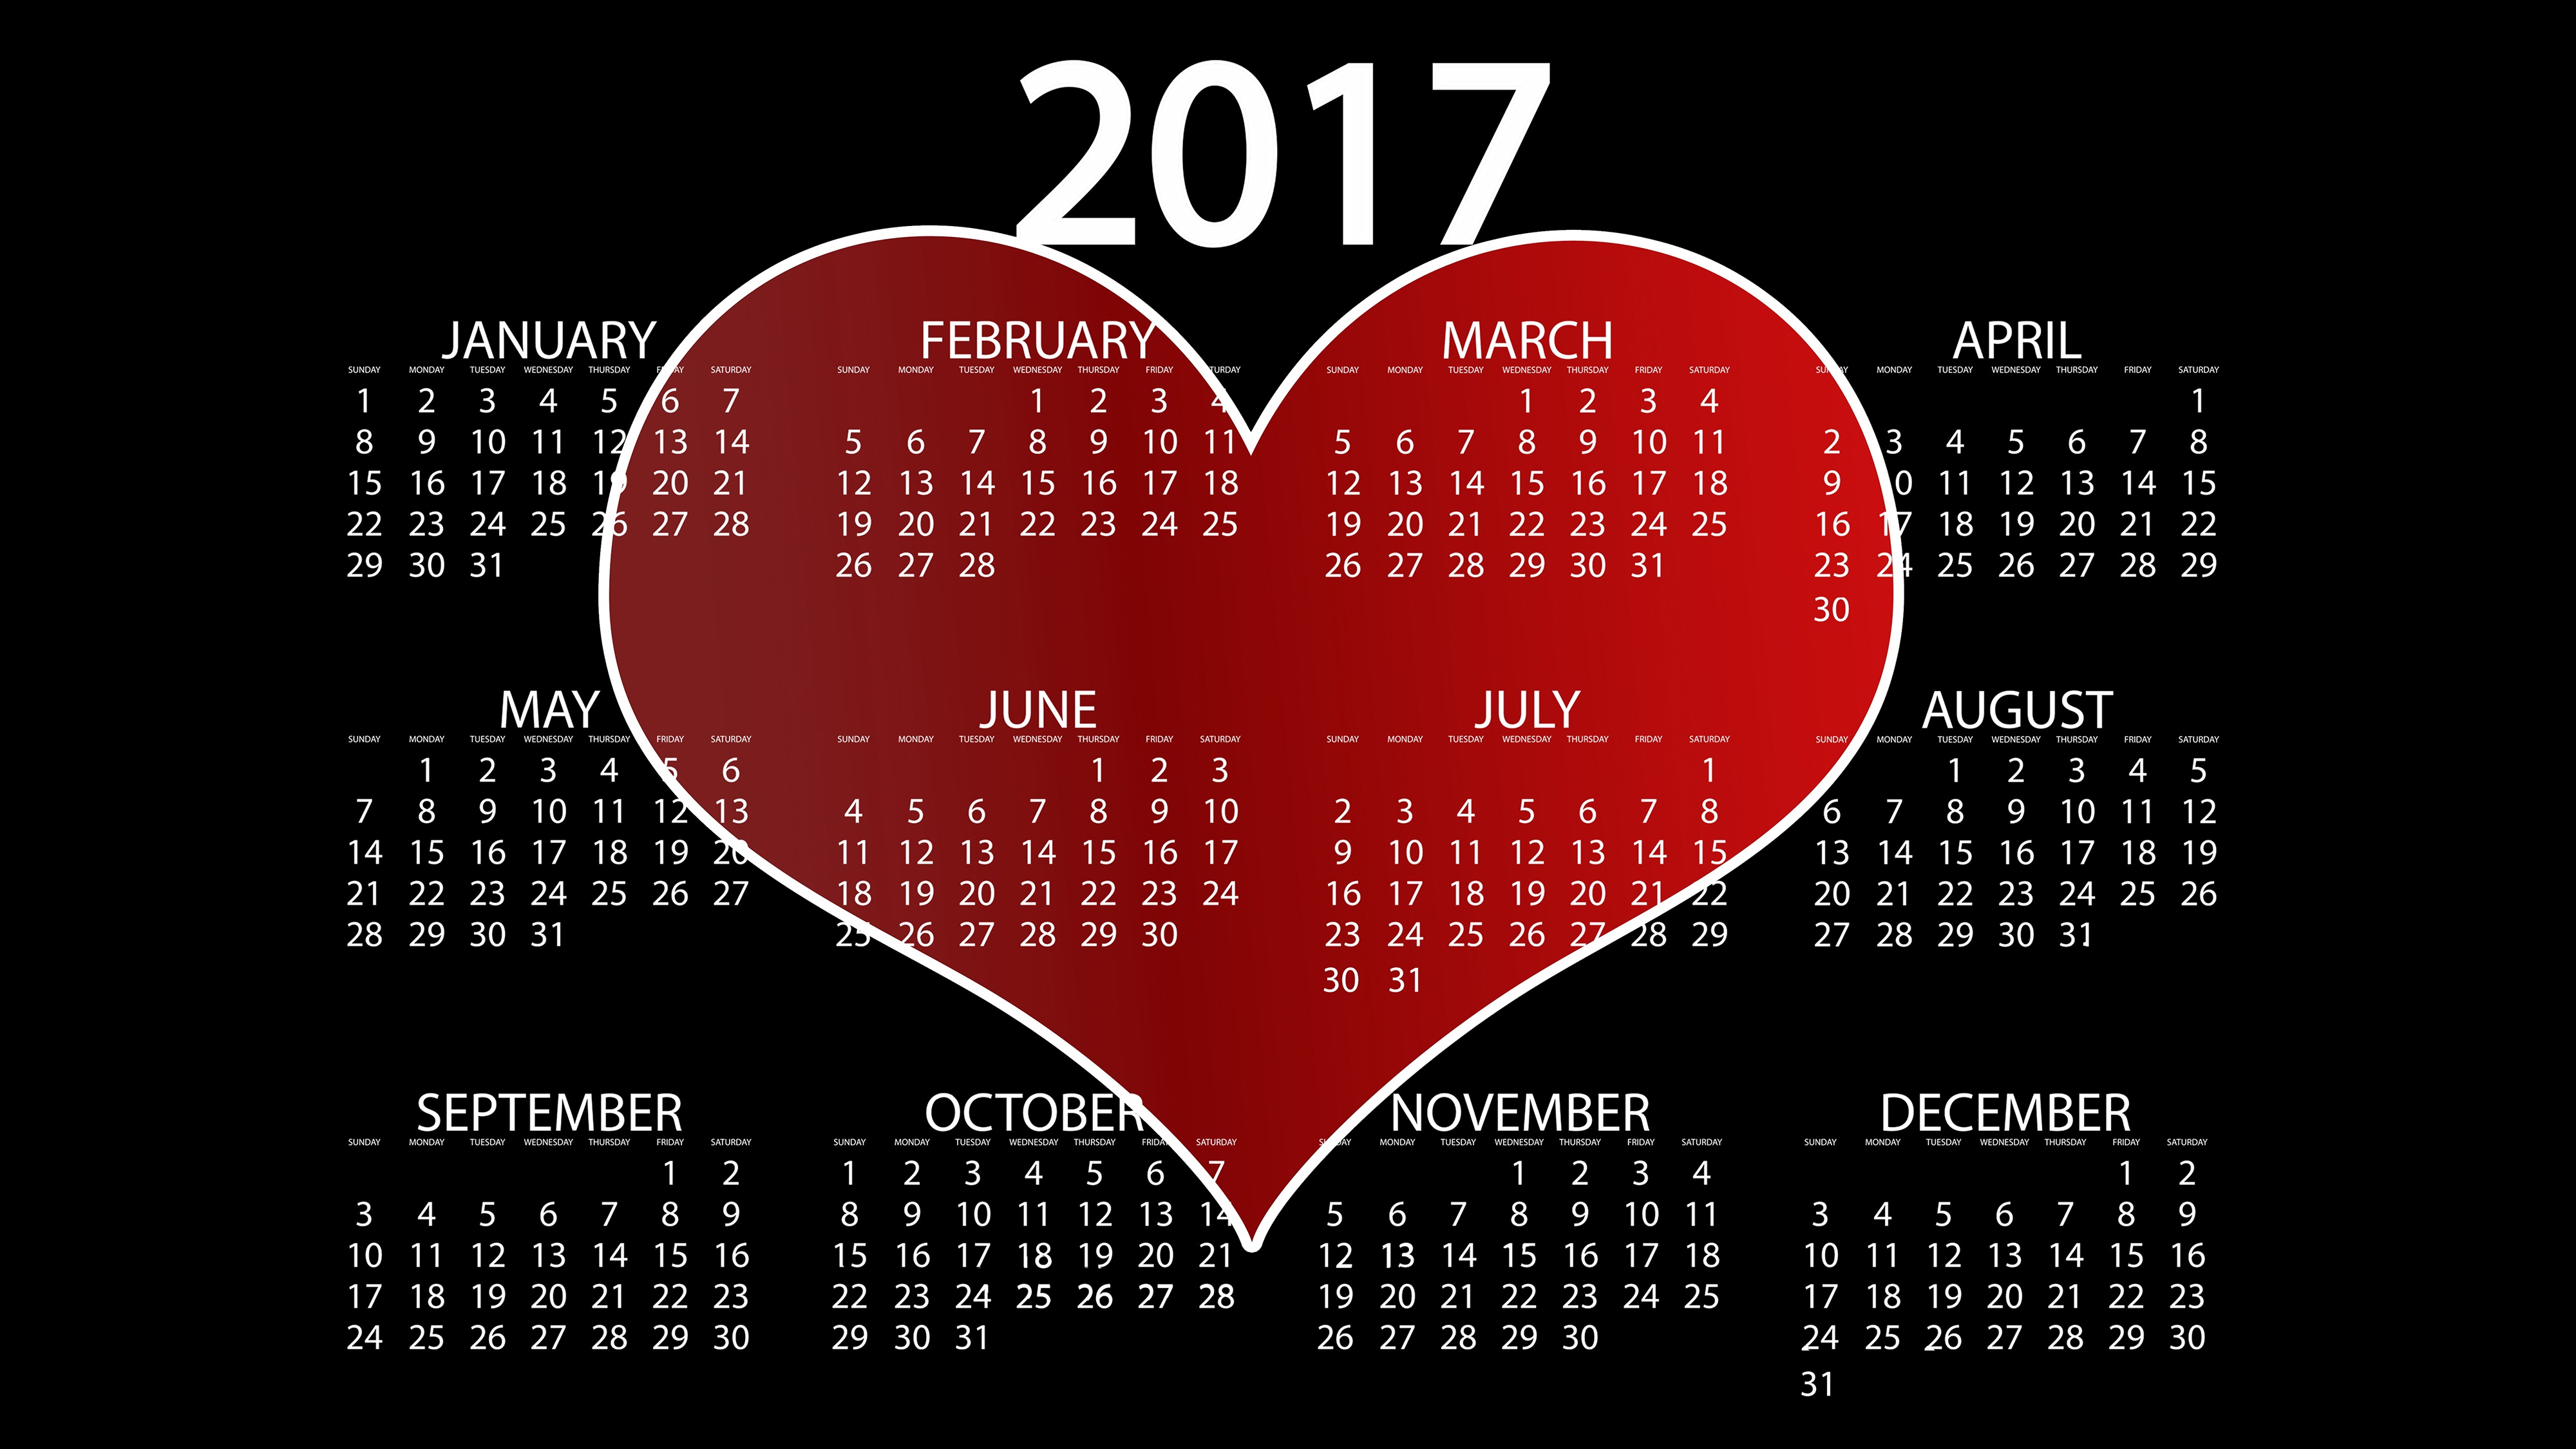 календарь на день влюбленных